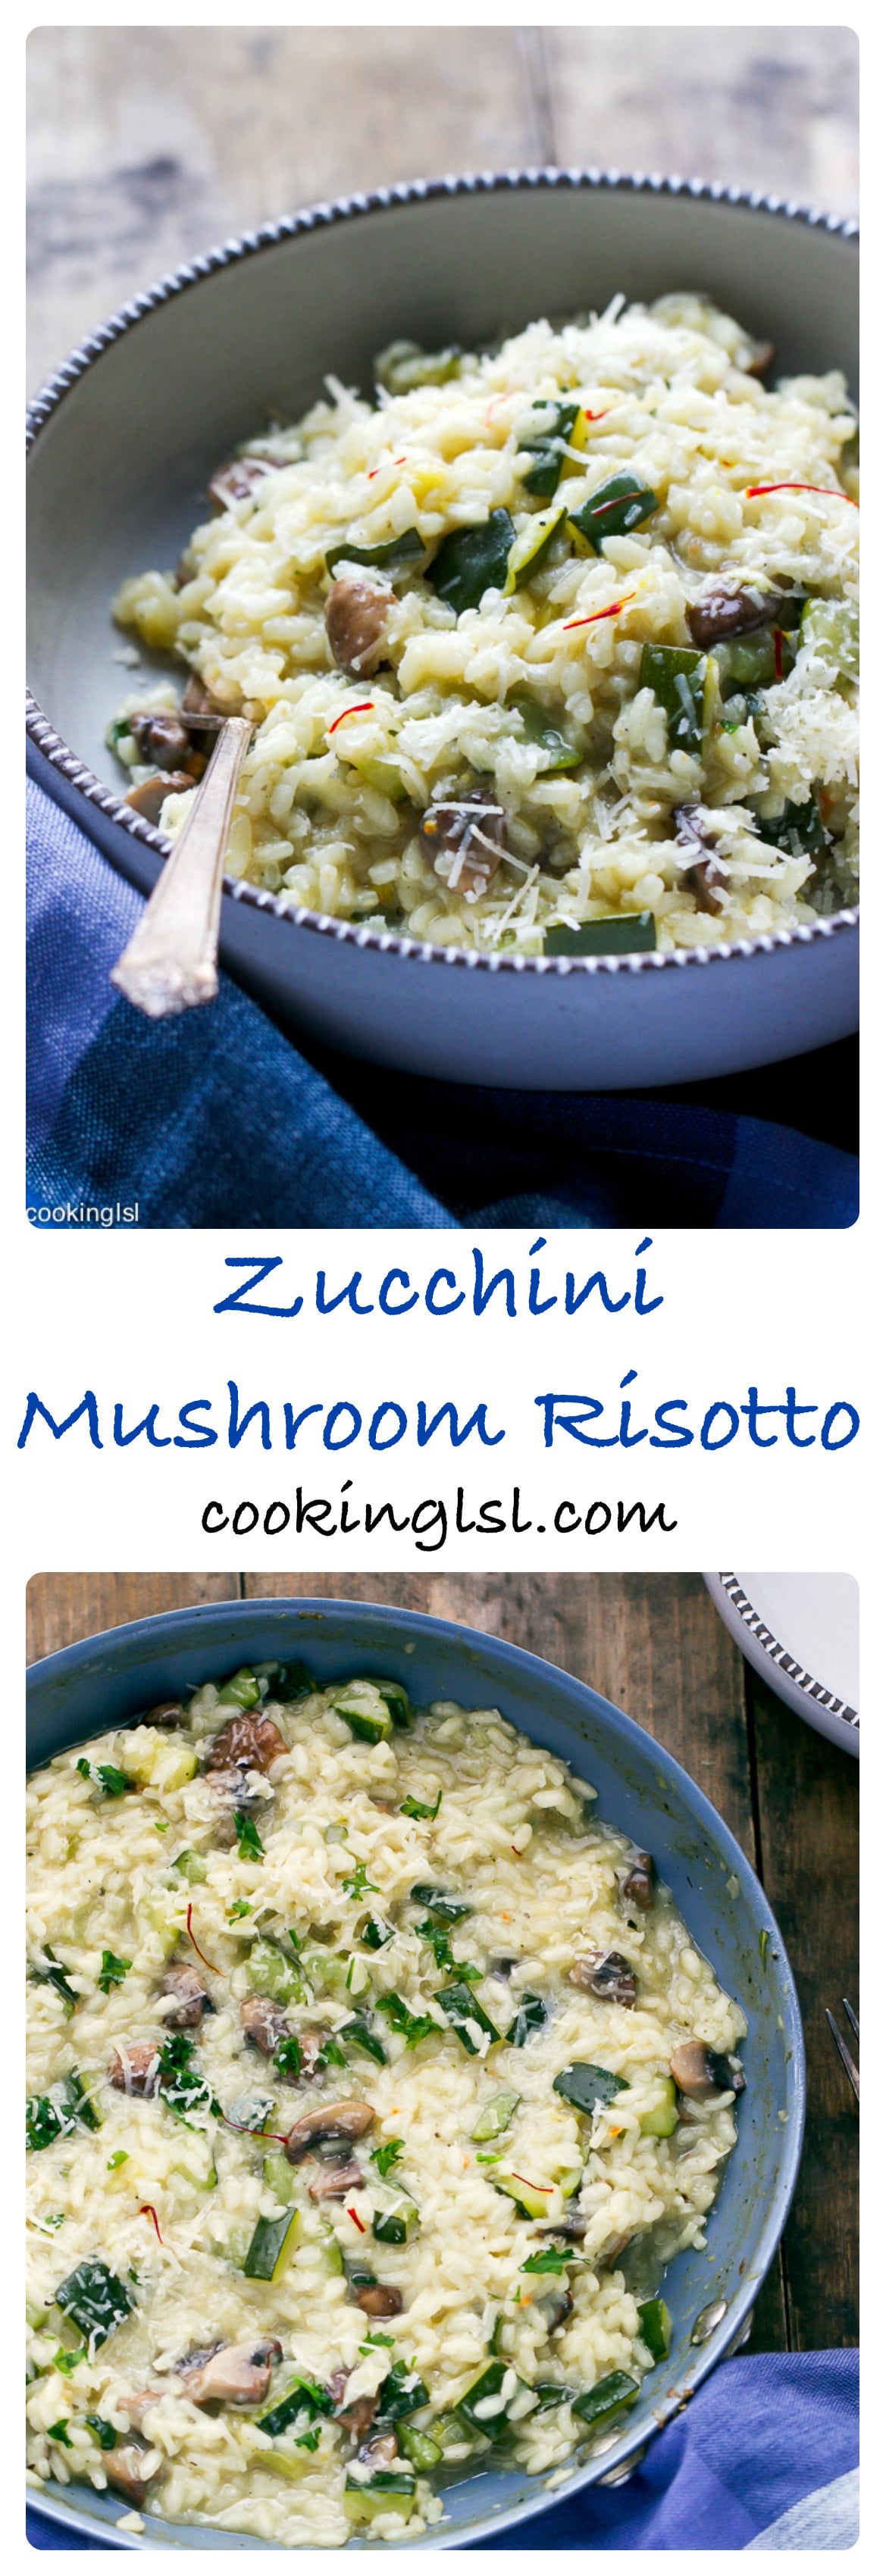 zucchini-mushroom-risotto-recipe